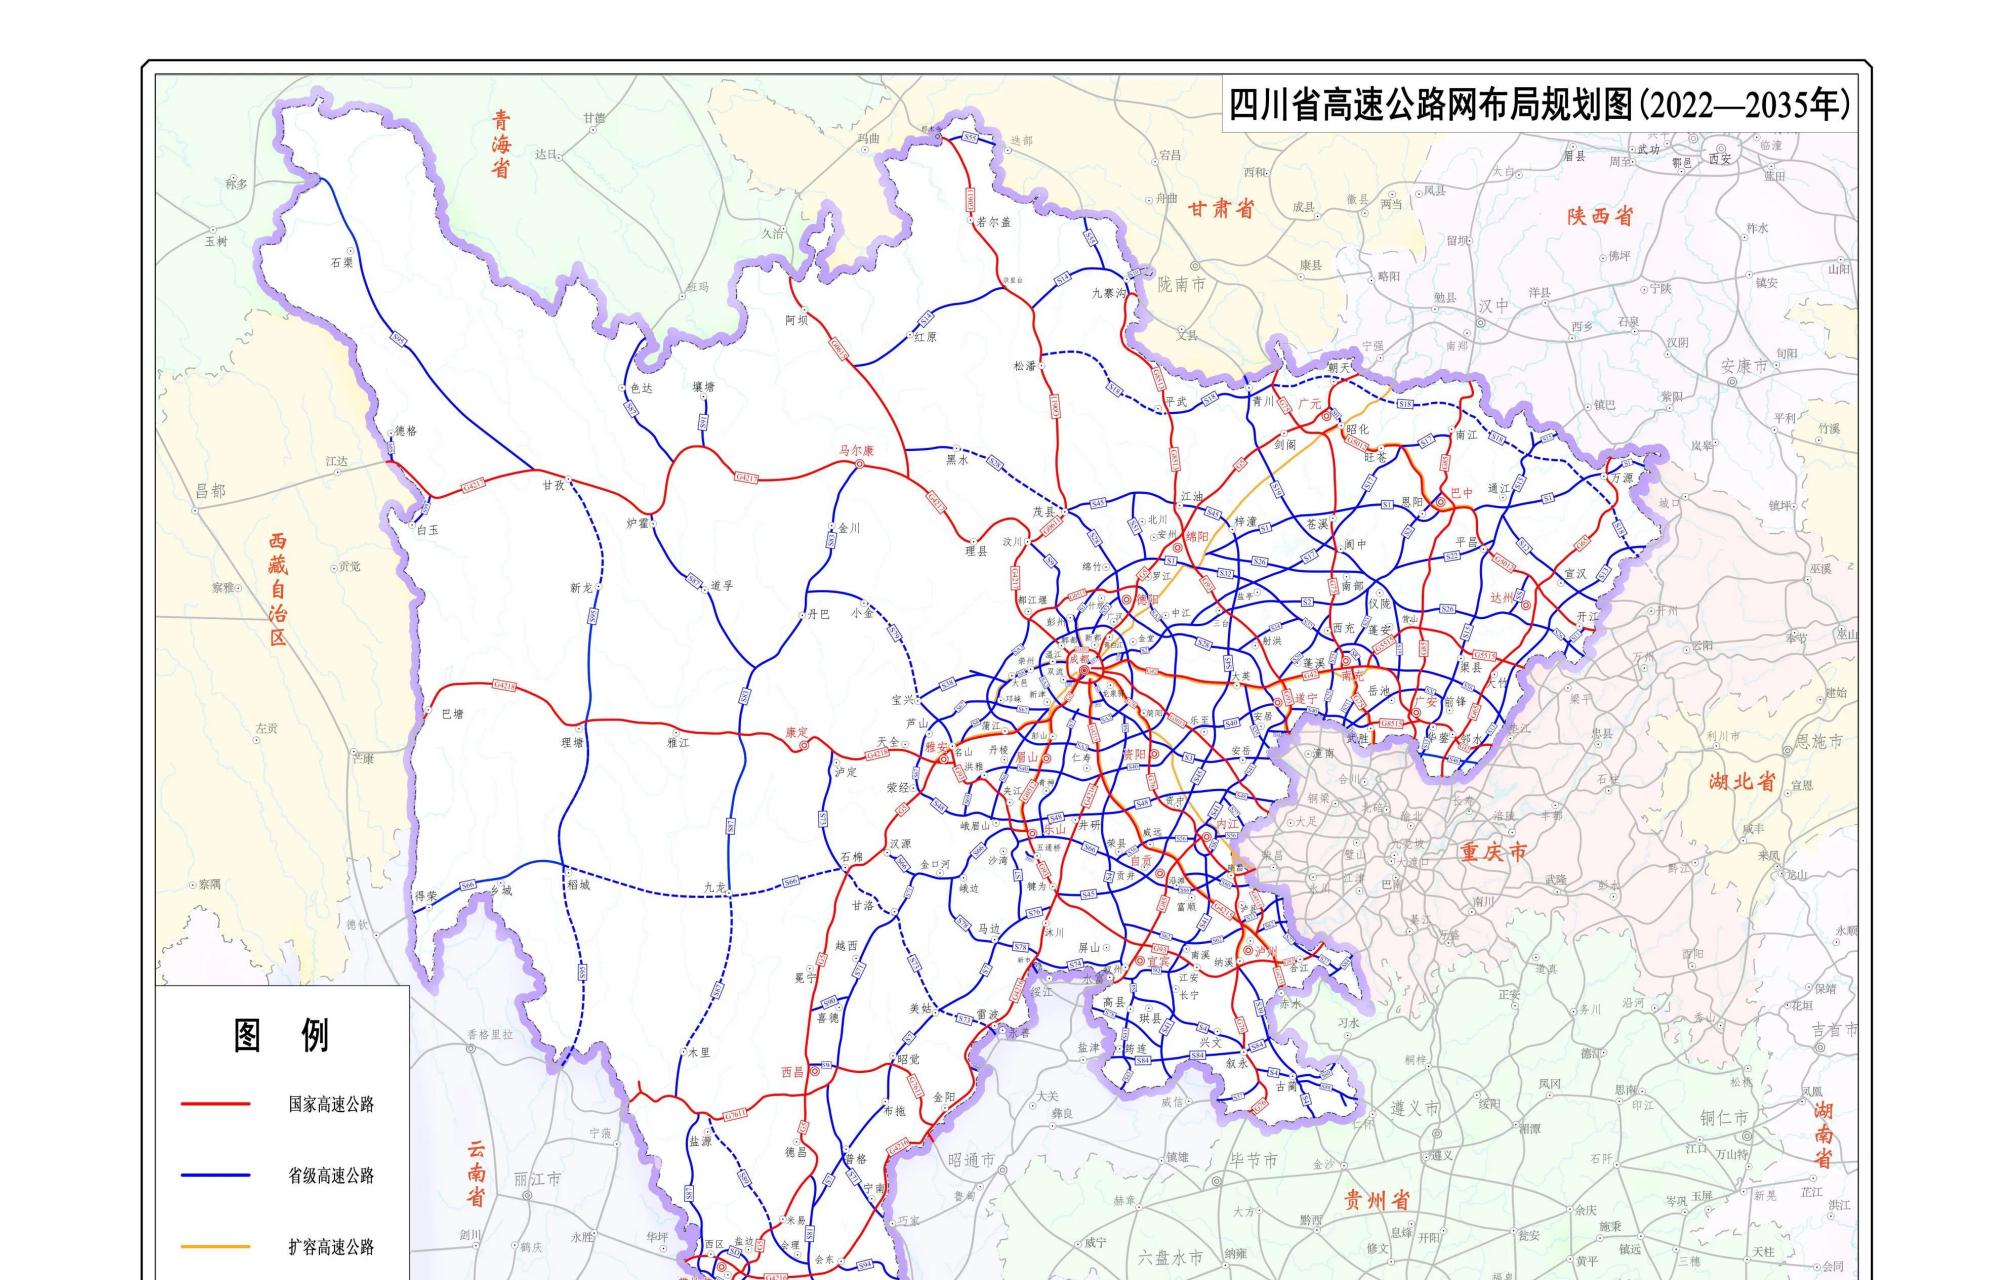 《四川省高速公路网布局规划(2022—2035年)》最新规划已发布,新版